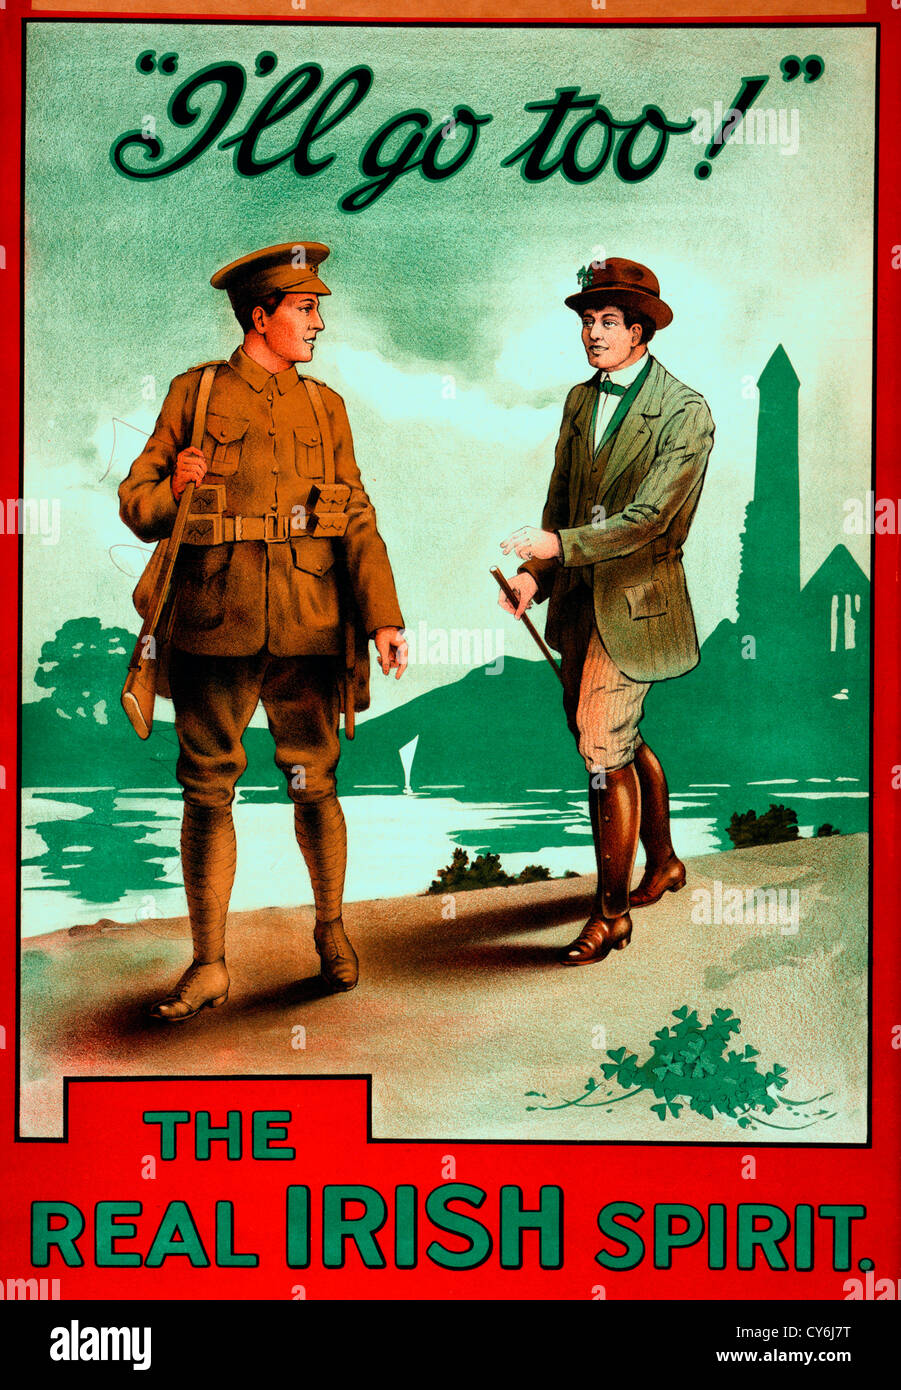 Je vais aller aussi - le vrai esprit irlandais - Affiche montrant un homme vêtu de vert, avec des trèfles dans son chapeau et à ses pieds, s'adressant à un soldat. La PREMIÈRE GUERRE MONDIALE poster Banque D'Images